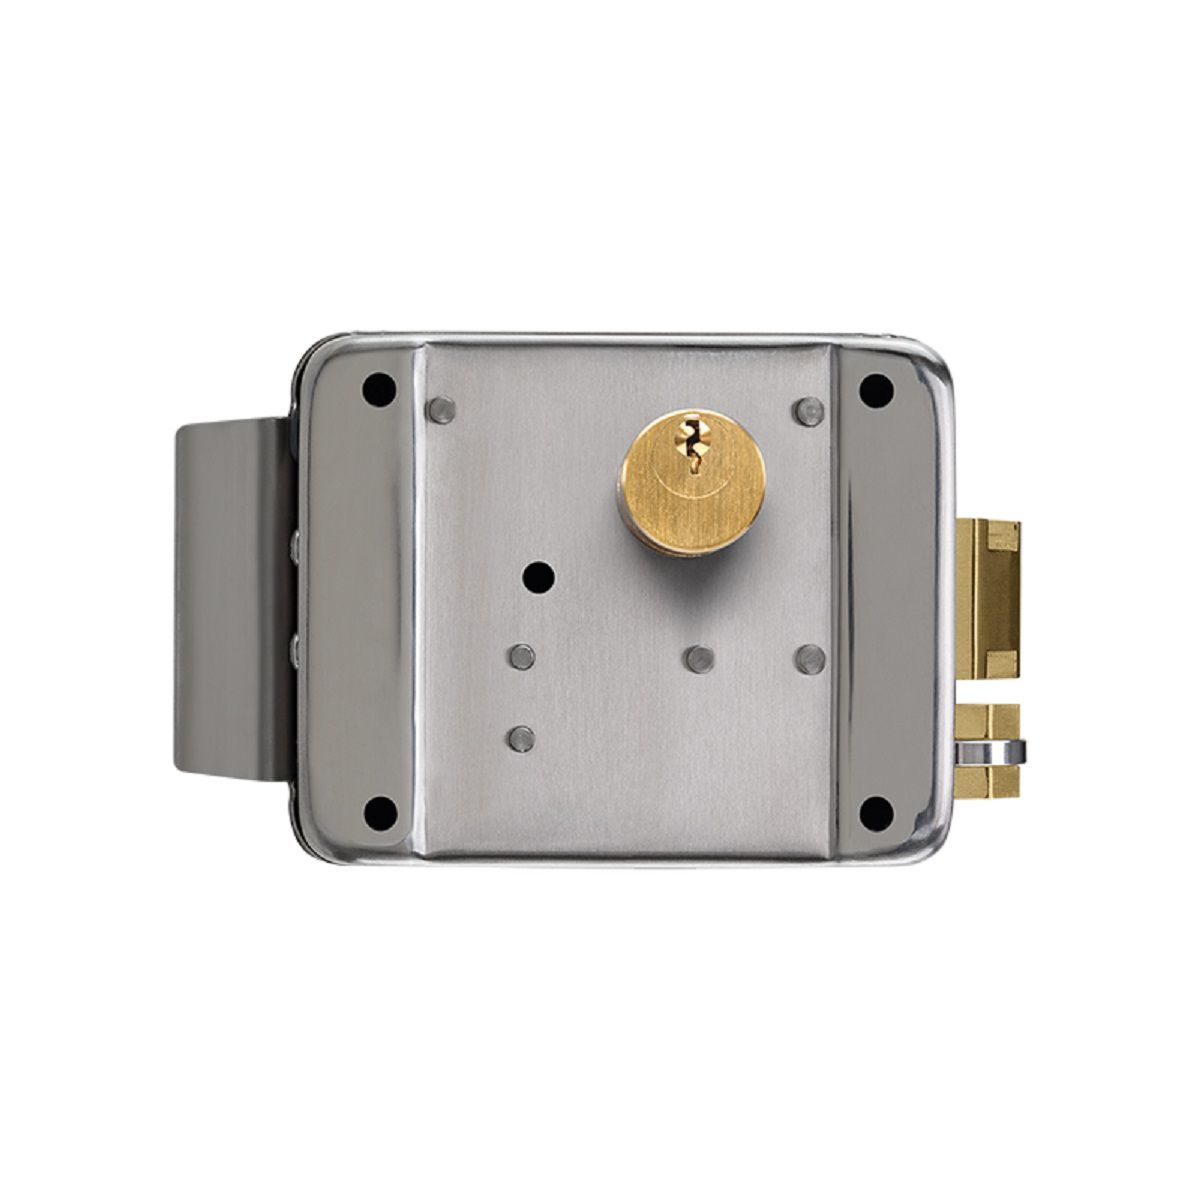 Fechadura elétrica de sobrepor com botoeira e chave intelbras FX 2000 INOX  - JS Soluções em Segurança